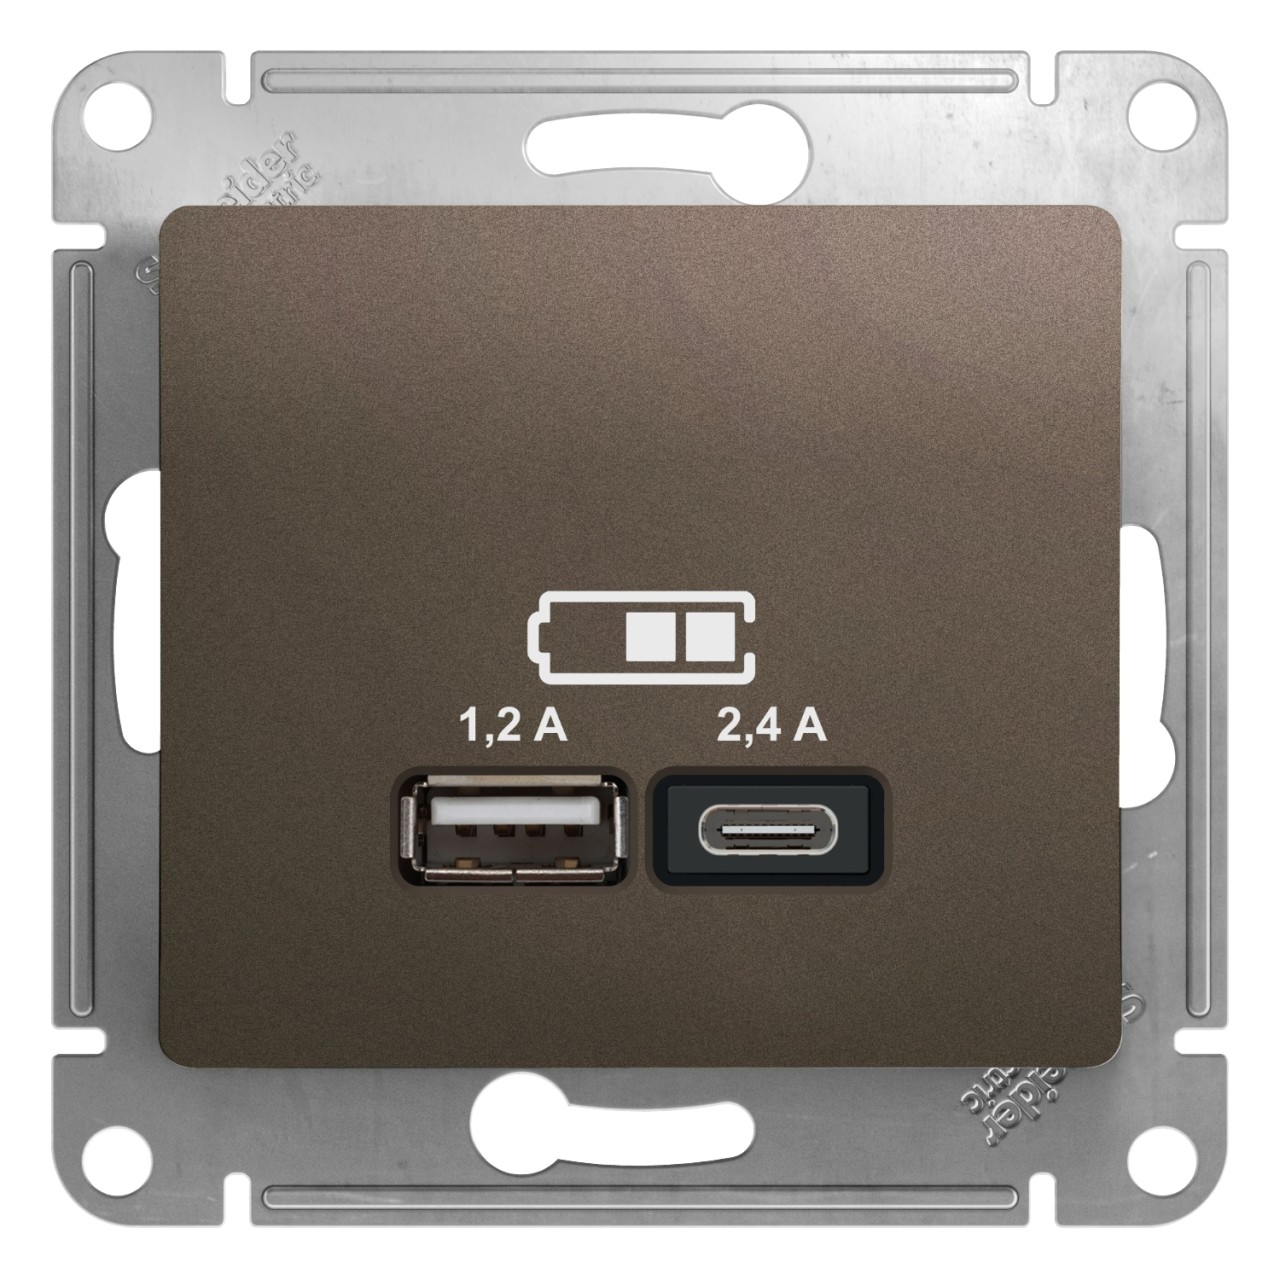 GSL000839 GLOSSA USB РОЗЕТКА A+С, 5В/2,4А, 2х5В/1,2 А, механизм, ШОКОЛАД